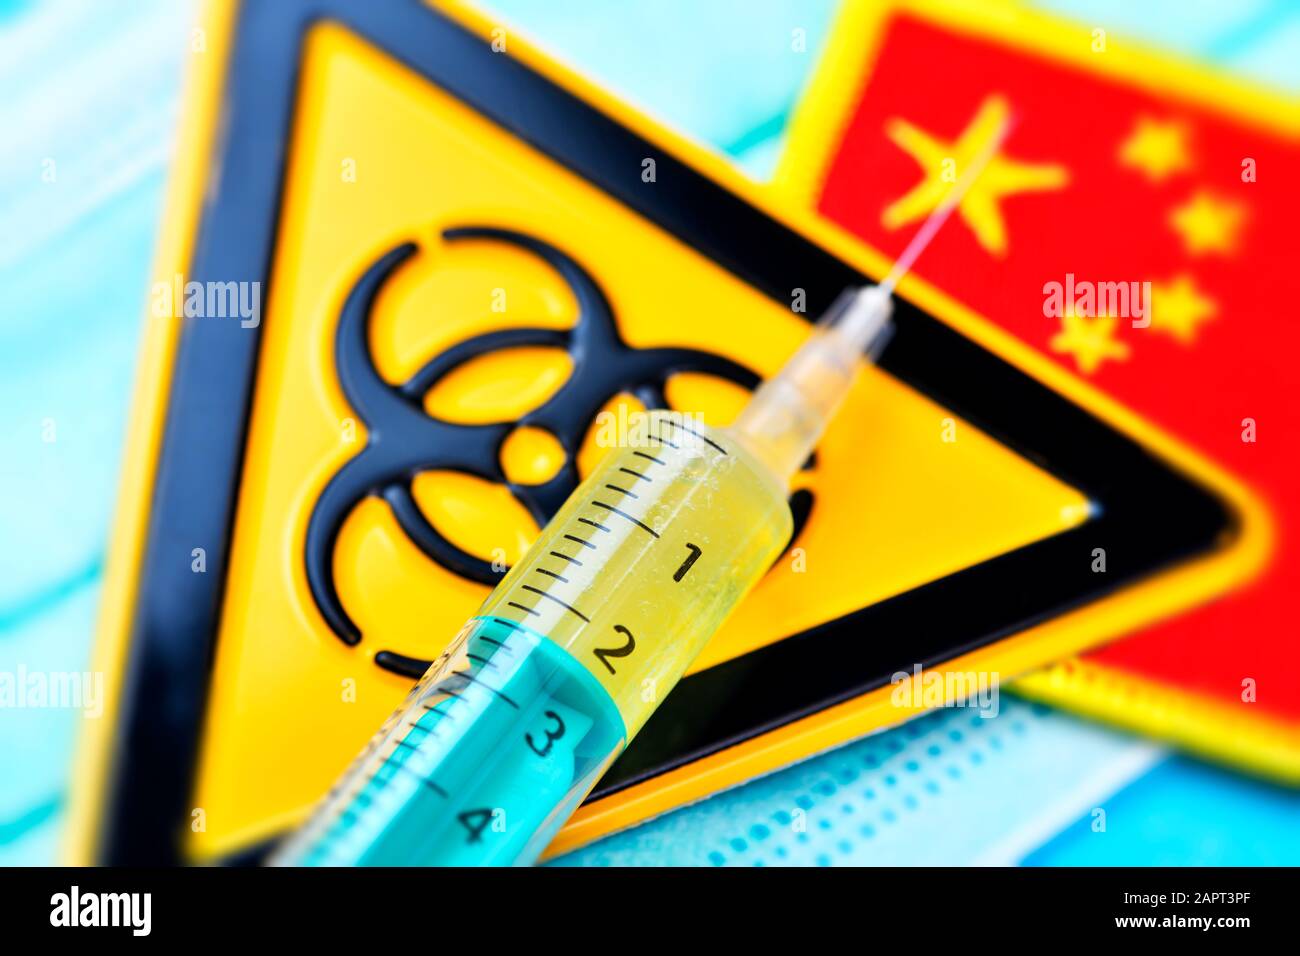 Biohazard sign and syringe on face mask and flag of China, coronavirus outbreak Stock Photo